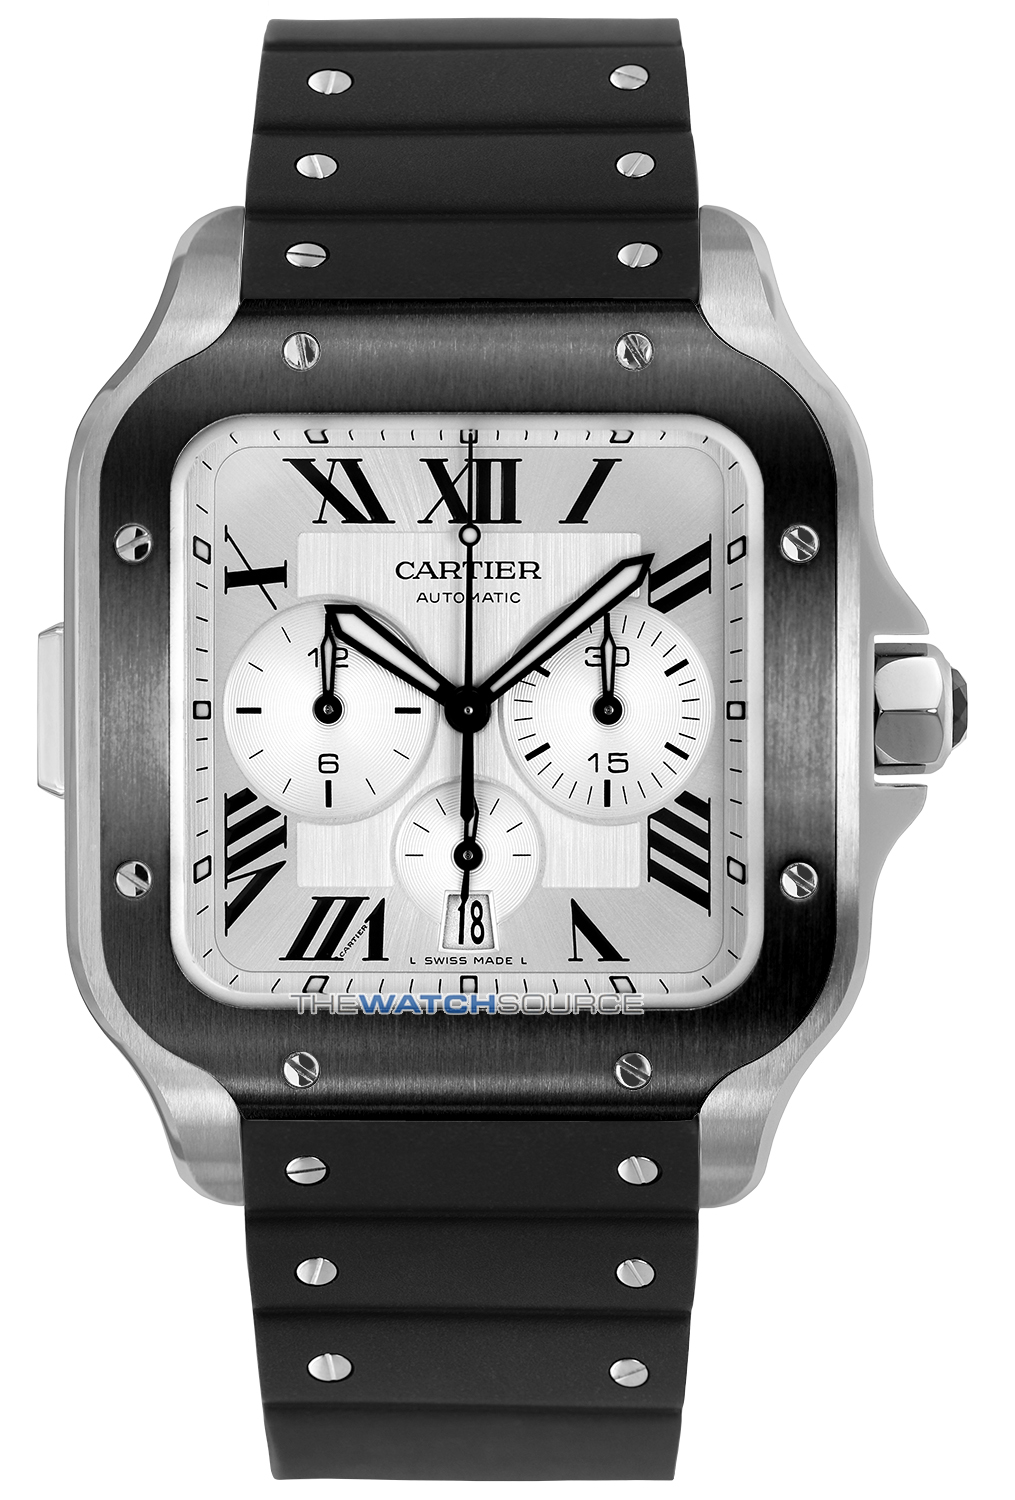 Buy this new Cartier Santos De Cartier Chronograph wssa0017 mens watch ...